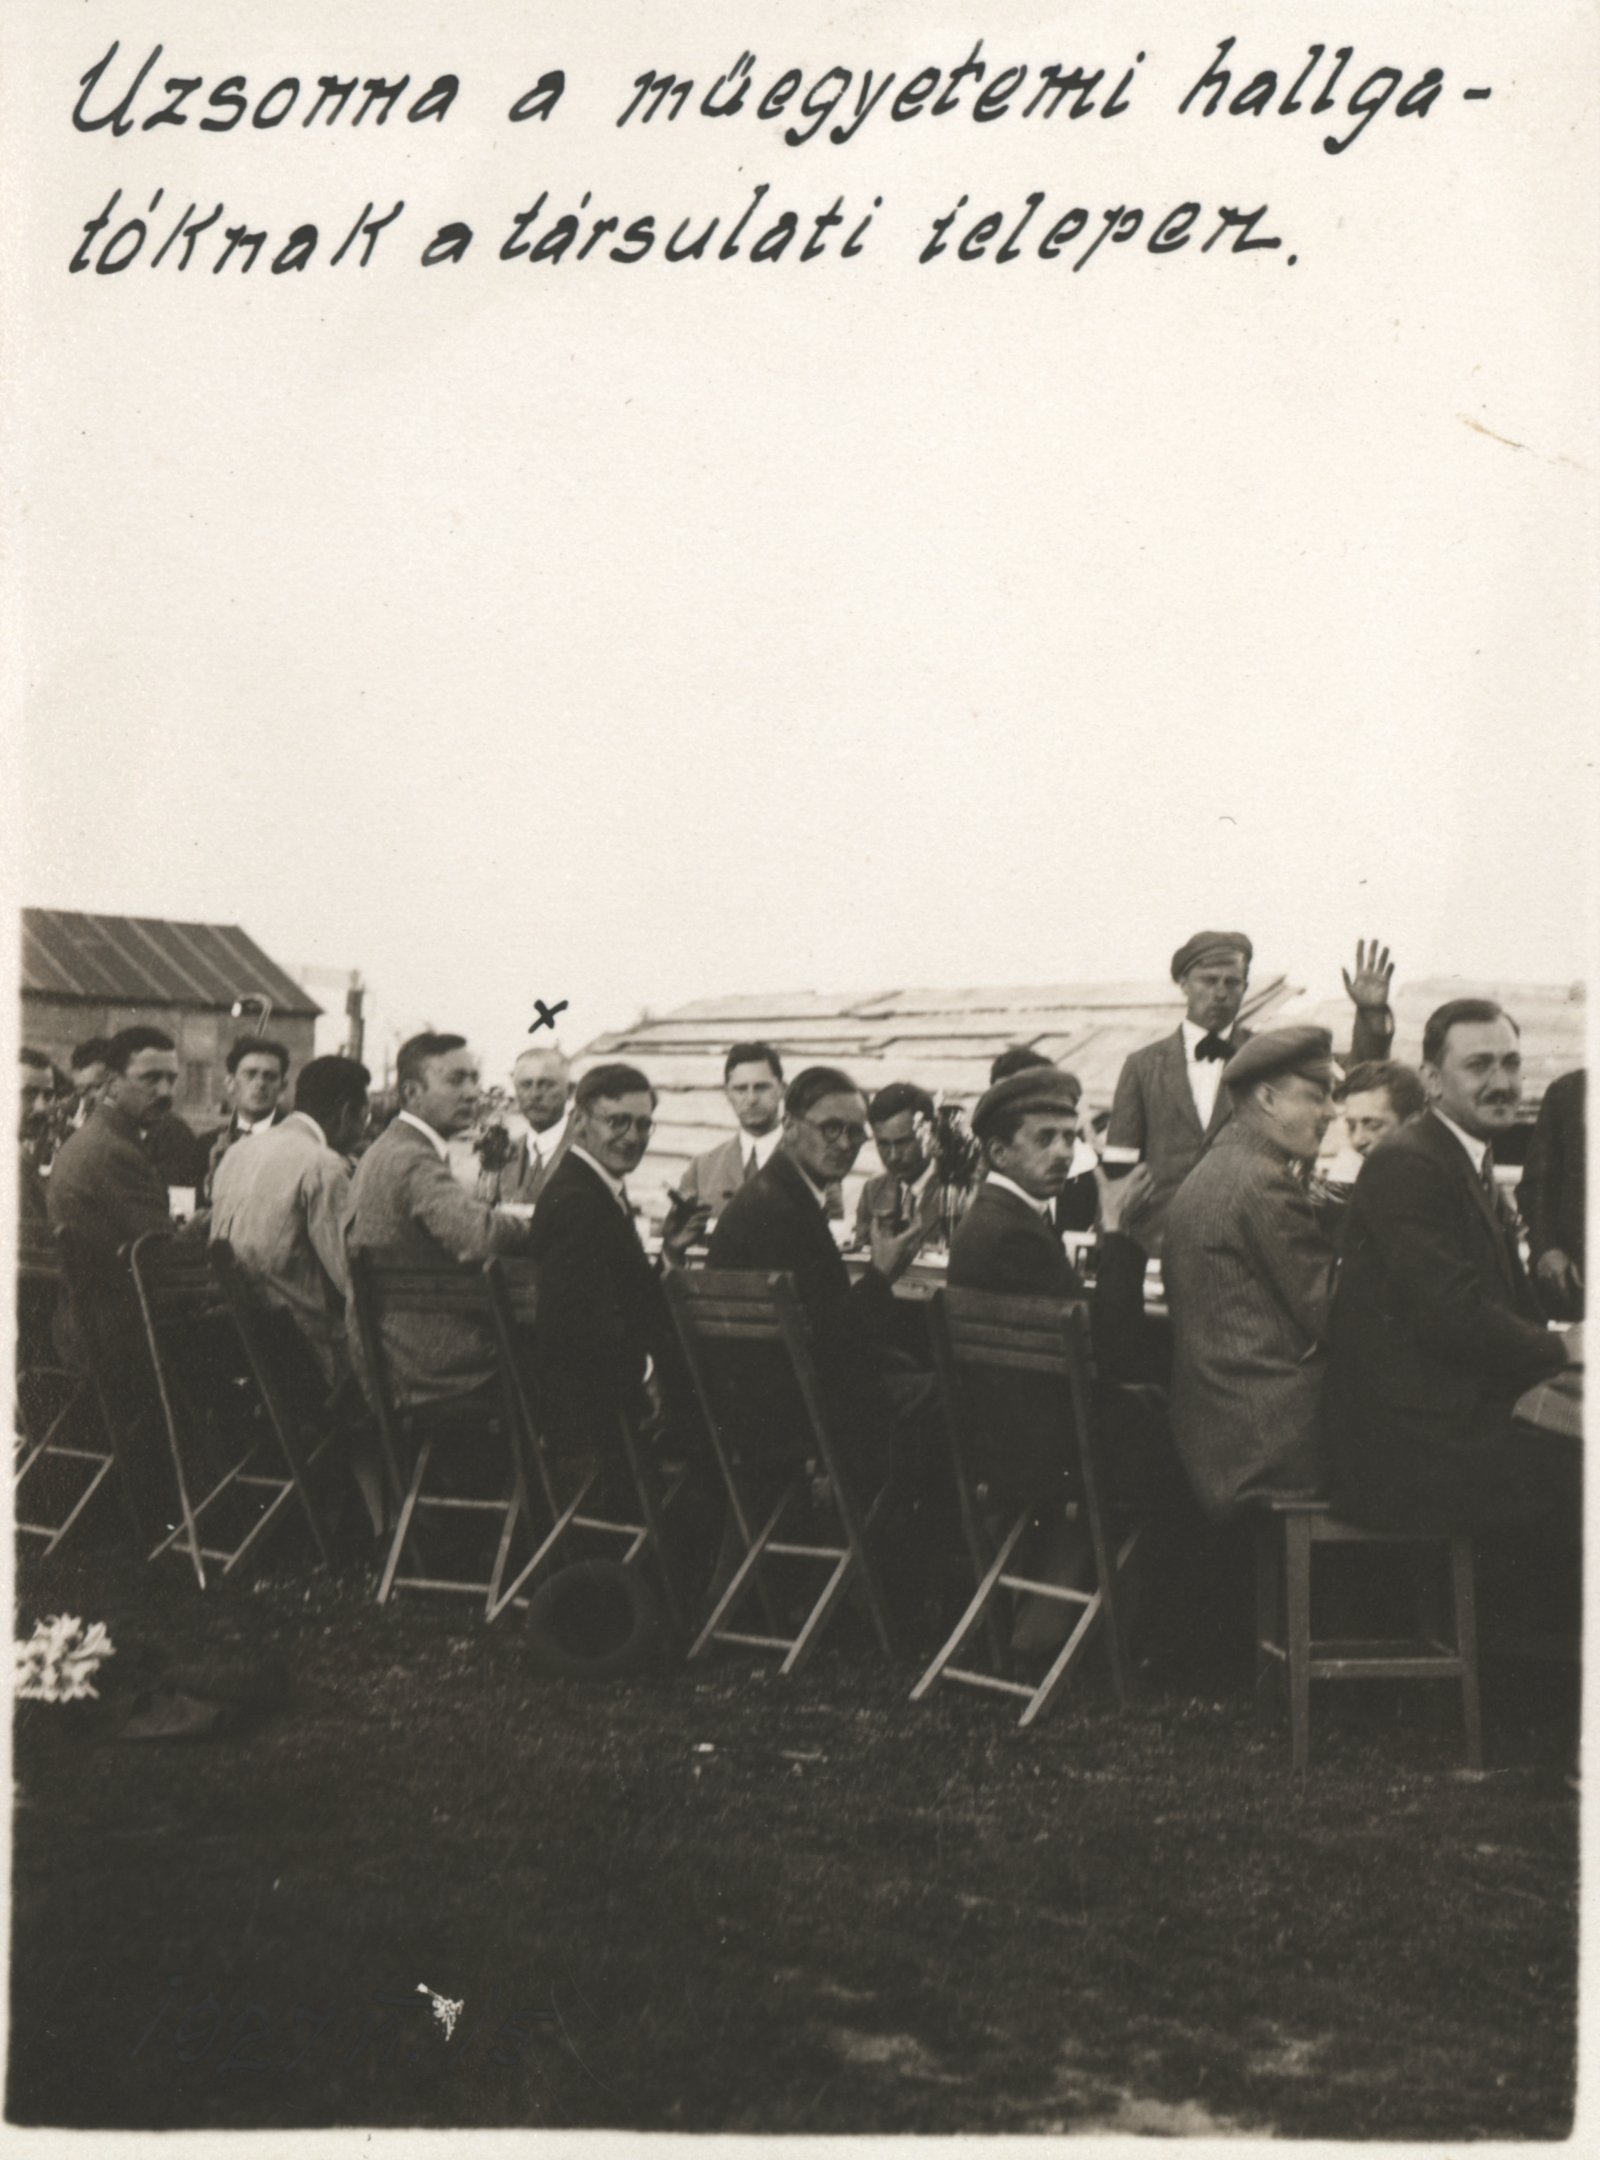 Uzsonna a műegyetemi hallgatóknak a társulati telepen, 1927. június 15. (Magyar Környezetvédelmi és Vízügyi Múzeum - Duna Múzeum CC BY-NC-SA)